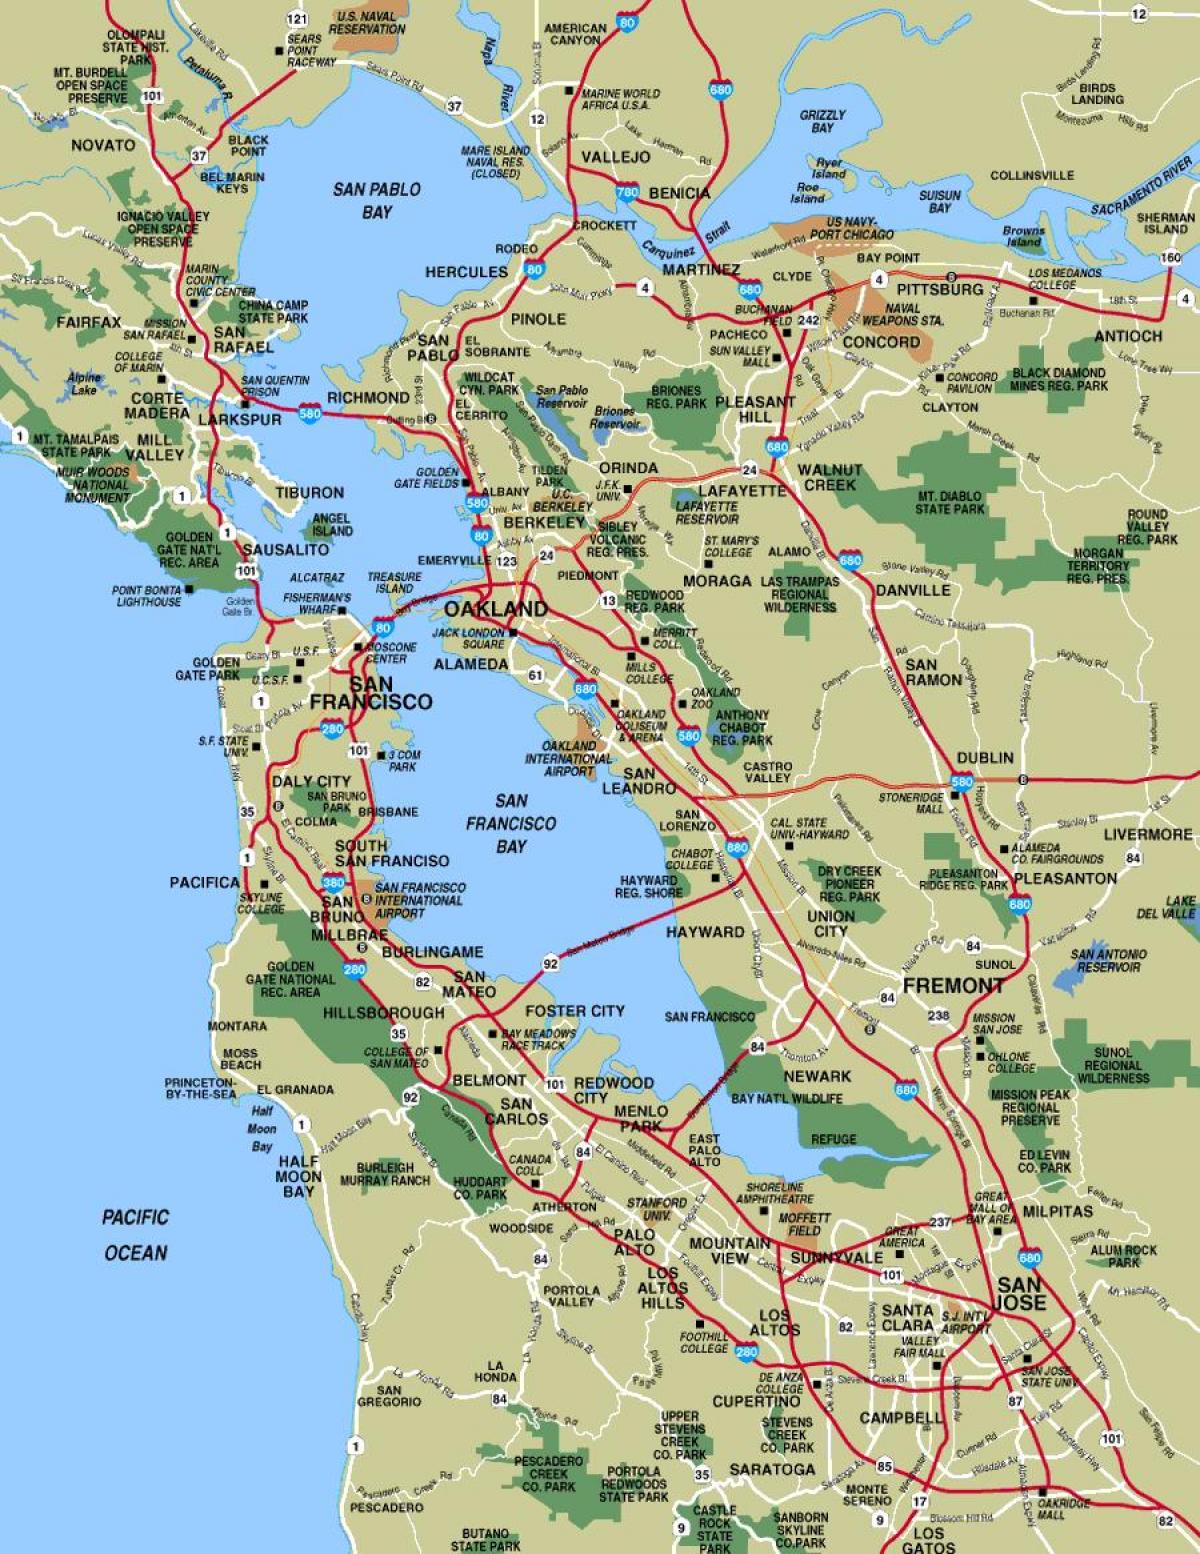 Χάρτης της ευρύτερης Σαν Φρανσίσκο